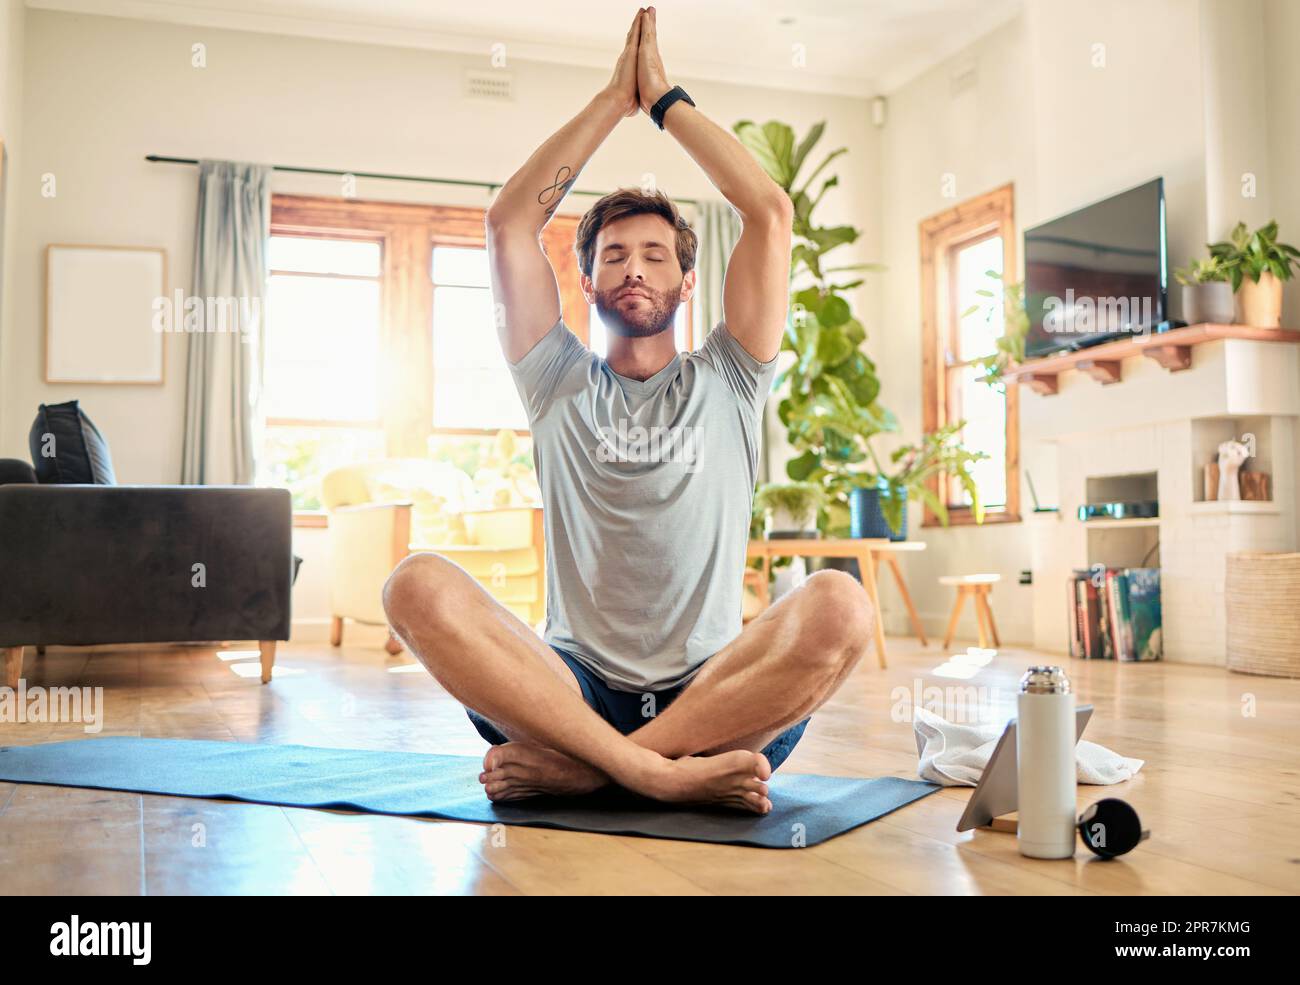 Ein junger weißer Mann sitzt mit gekreuzten Beinen und geschlossenen Augen und meditiert in Harmonie mit den Händen in namensvoller Geste, während er zu Hause Yoga praktiziert. Ein ruhiger, entspannter und fokussierter Kerl fühlt sich wie ein Zen und betet leise für Stressabbau und Frieden Stockfoto